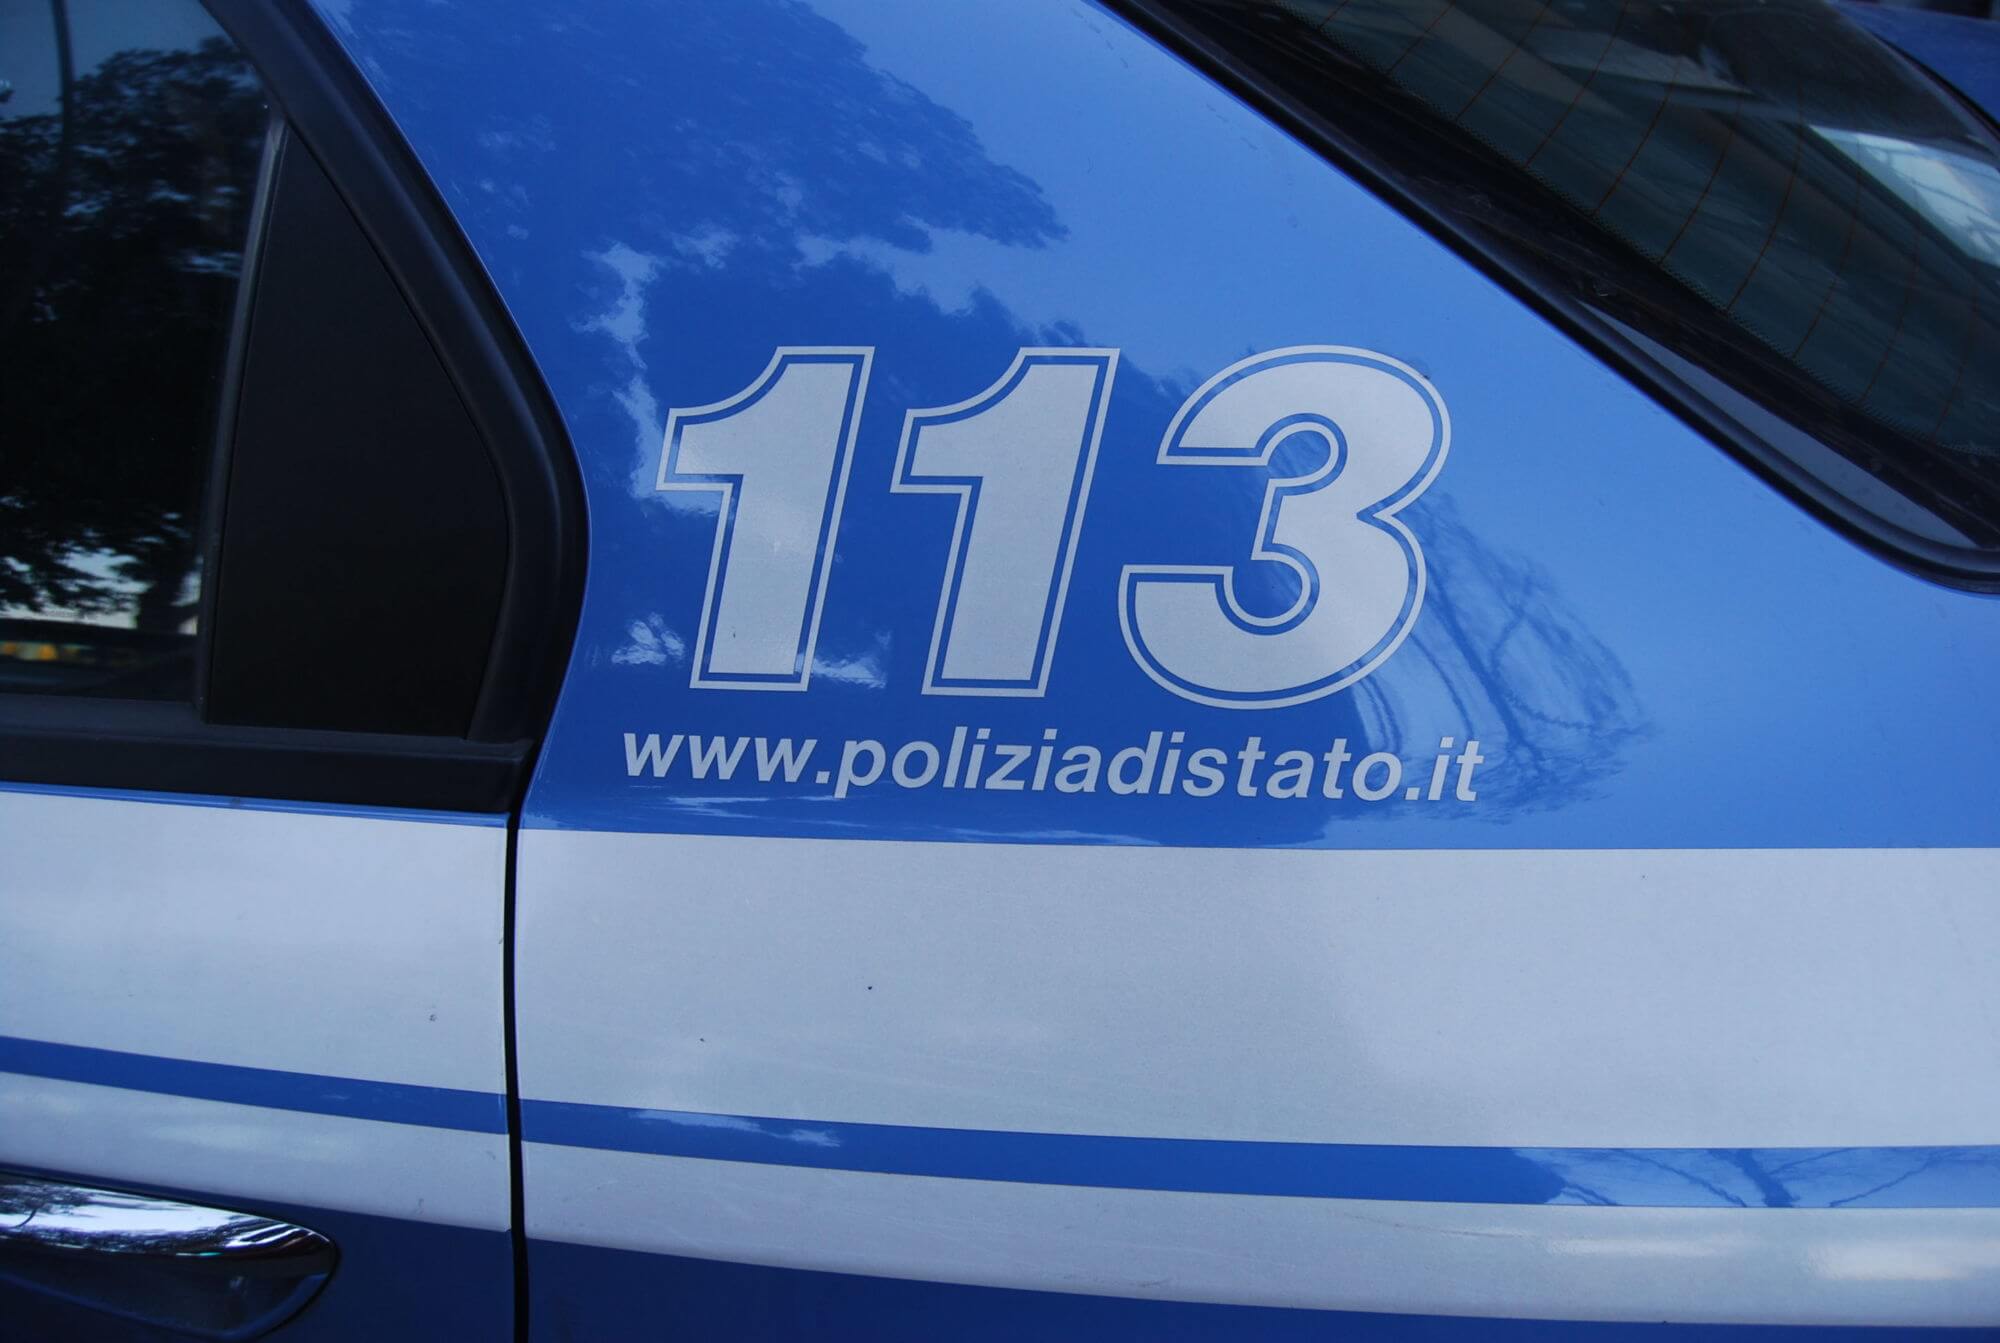 Trovata da un poliziotto libero dal servizio ragazza tedesca scomparsa a Cremona